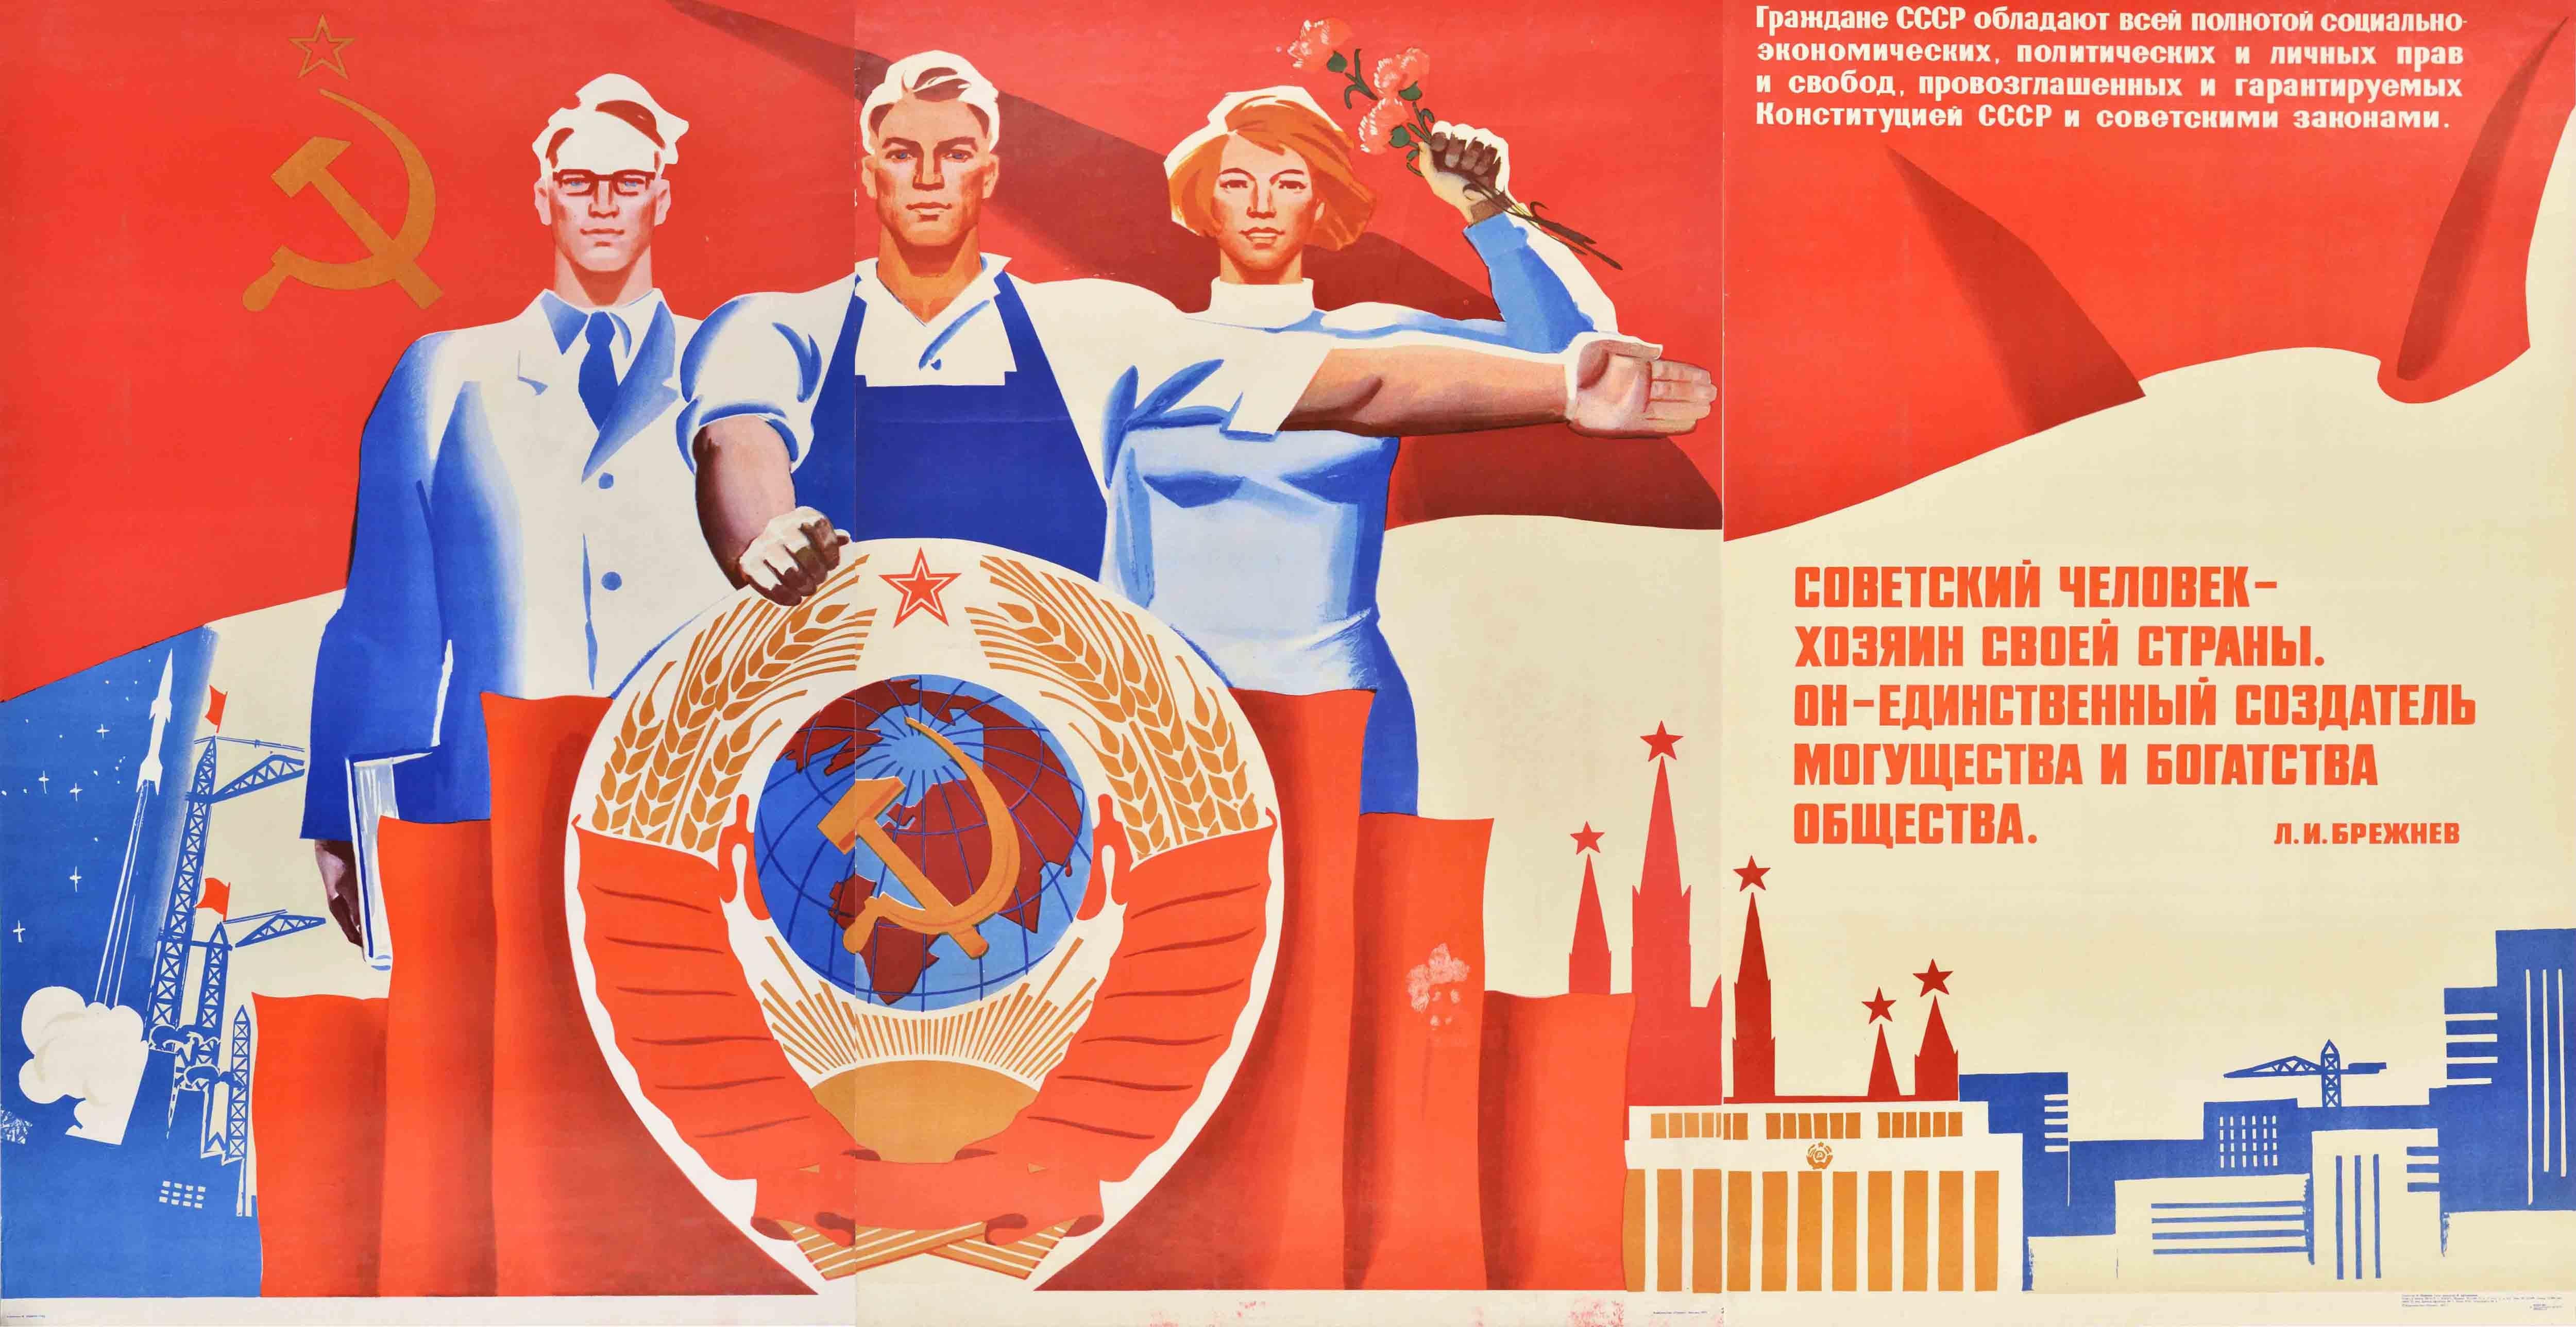 Kominarets Print - Original Vintage Propaganda Poster Soviet Man Is Master Creator Industry Science